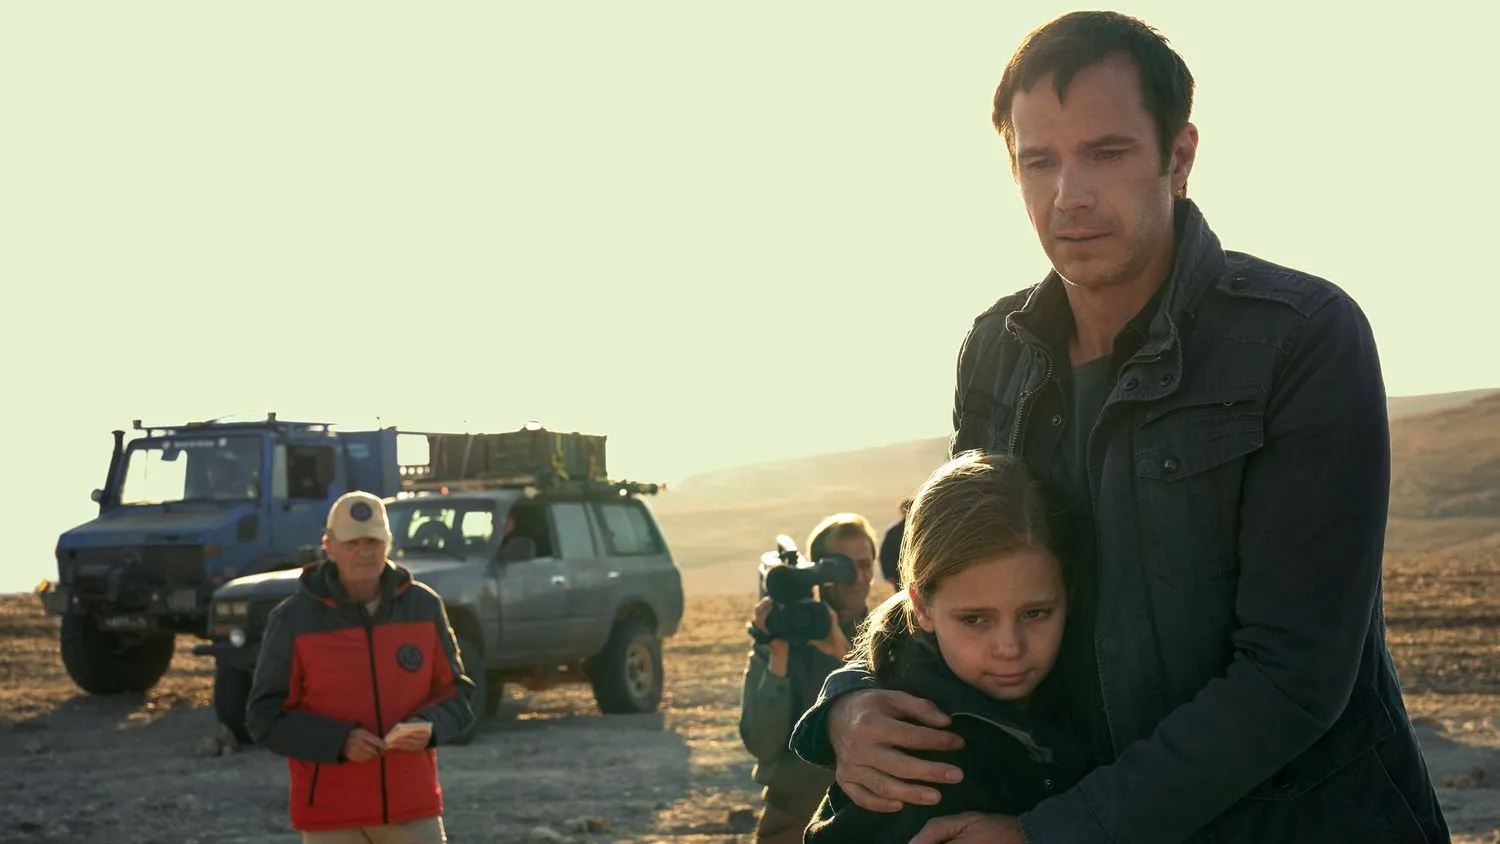 Mann, der ein junges Mädchen umarmt, während er in einer Wüste wartet. Im Hintergrund sind ein großer Lastwagen, ein Jeep, eine Person mit roter Jacke und Mütze sowie ein Mann mit einer großen Kamera zu sehen.